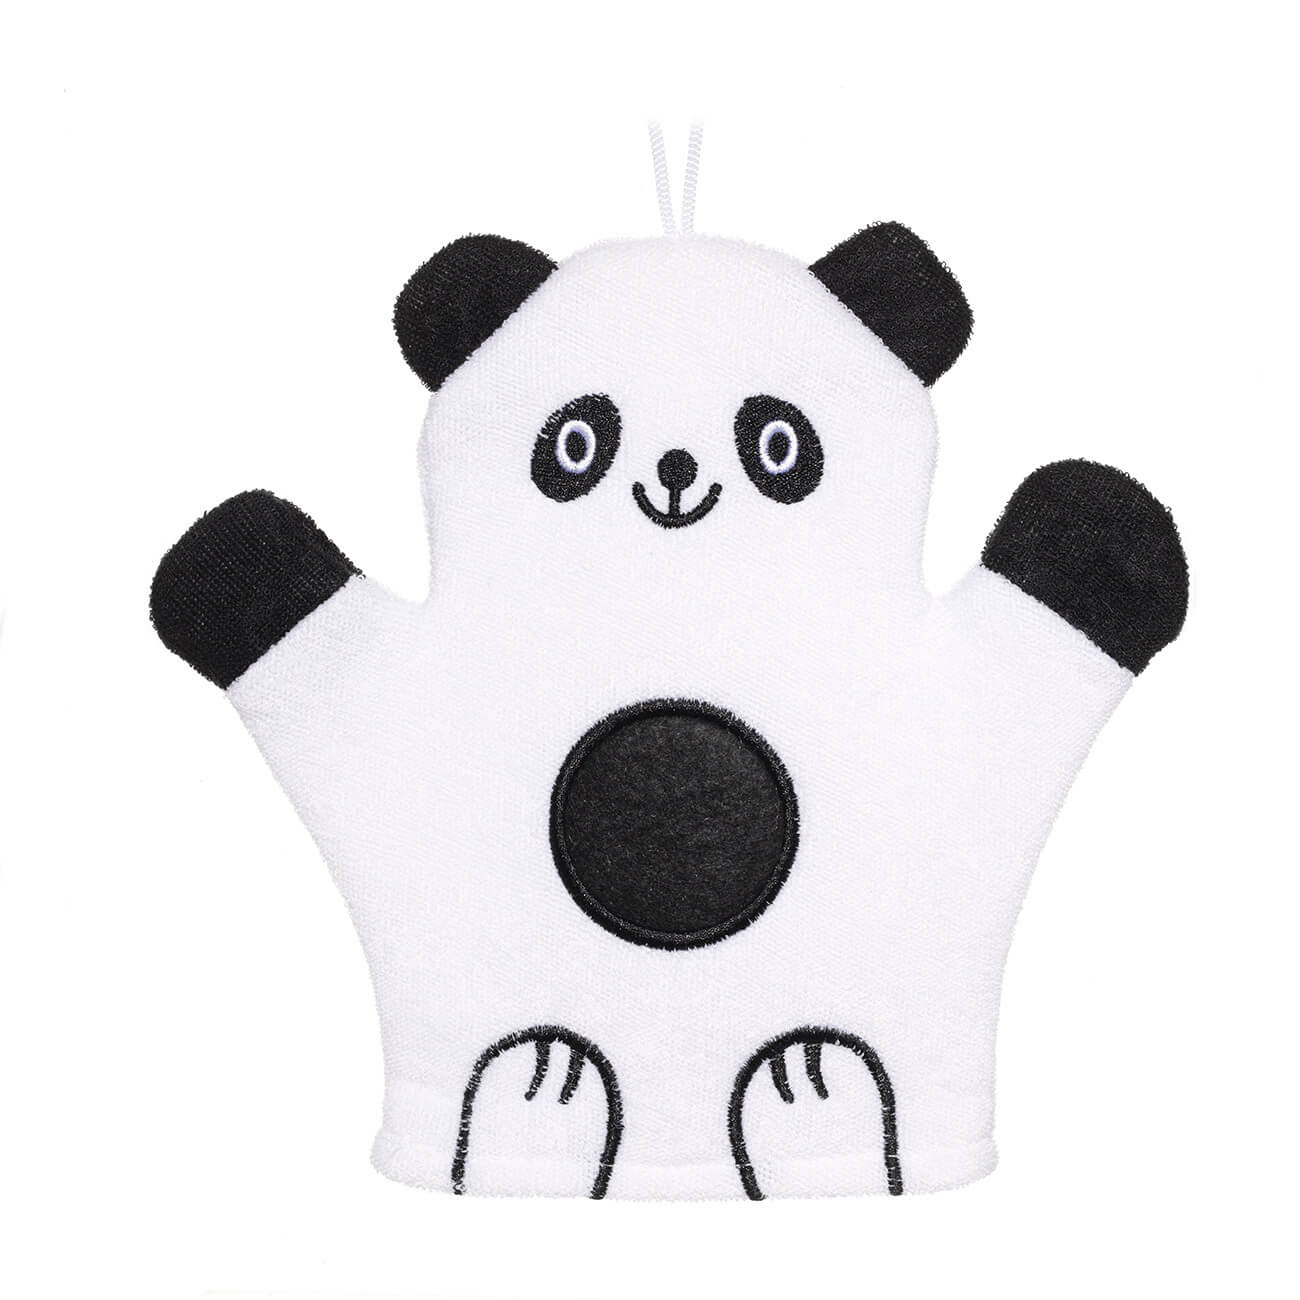 Мочалка-варежка для мытья тела, 20х20 см, детская, полиэстер, черно-белая, Панда, Panda мялка сквиши панда